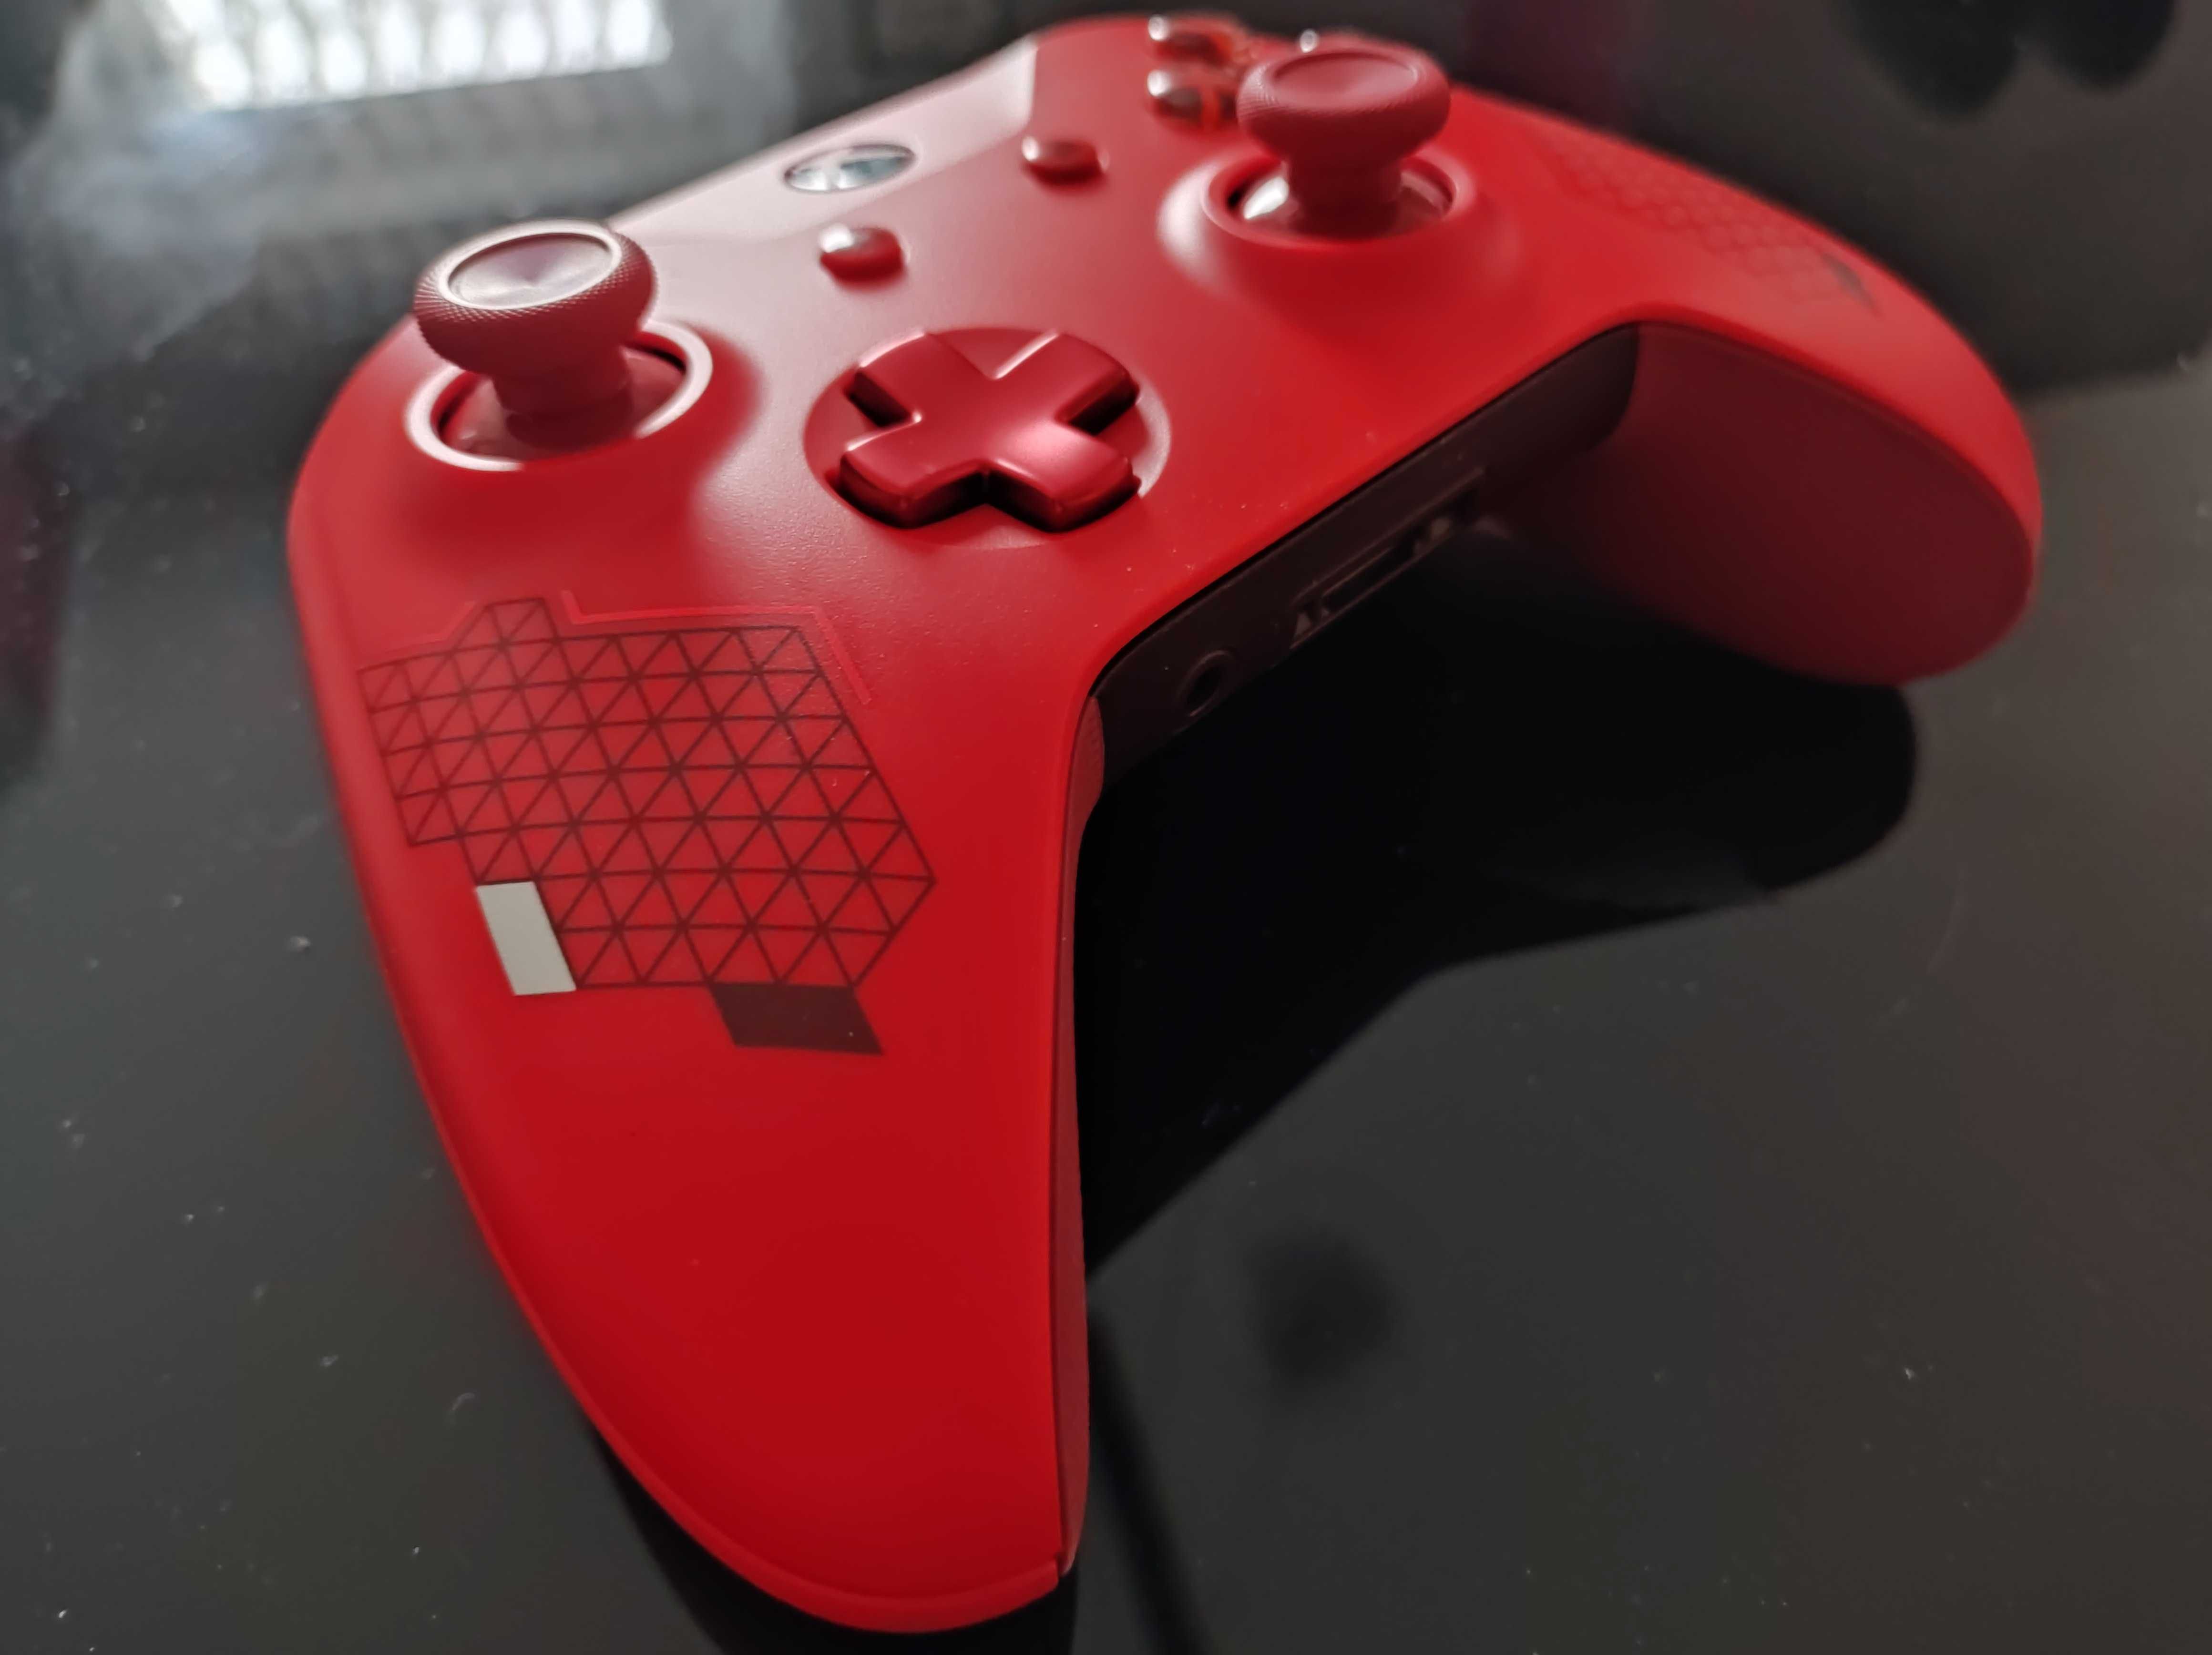 Pad kontroler do Xbox one series Sport Red idealny jak nowy